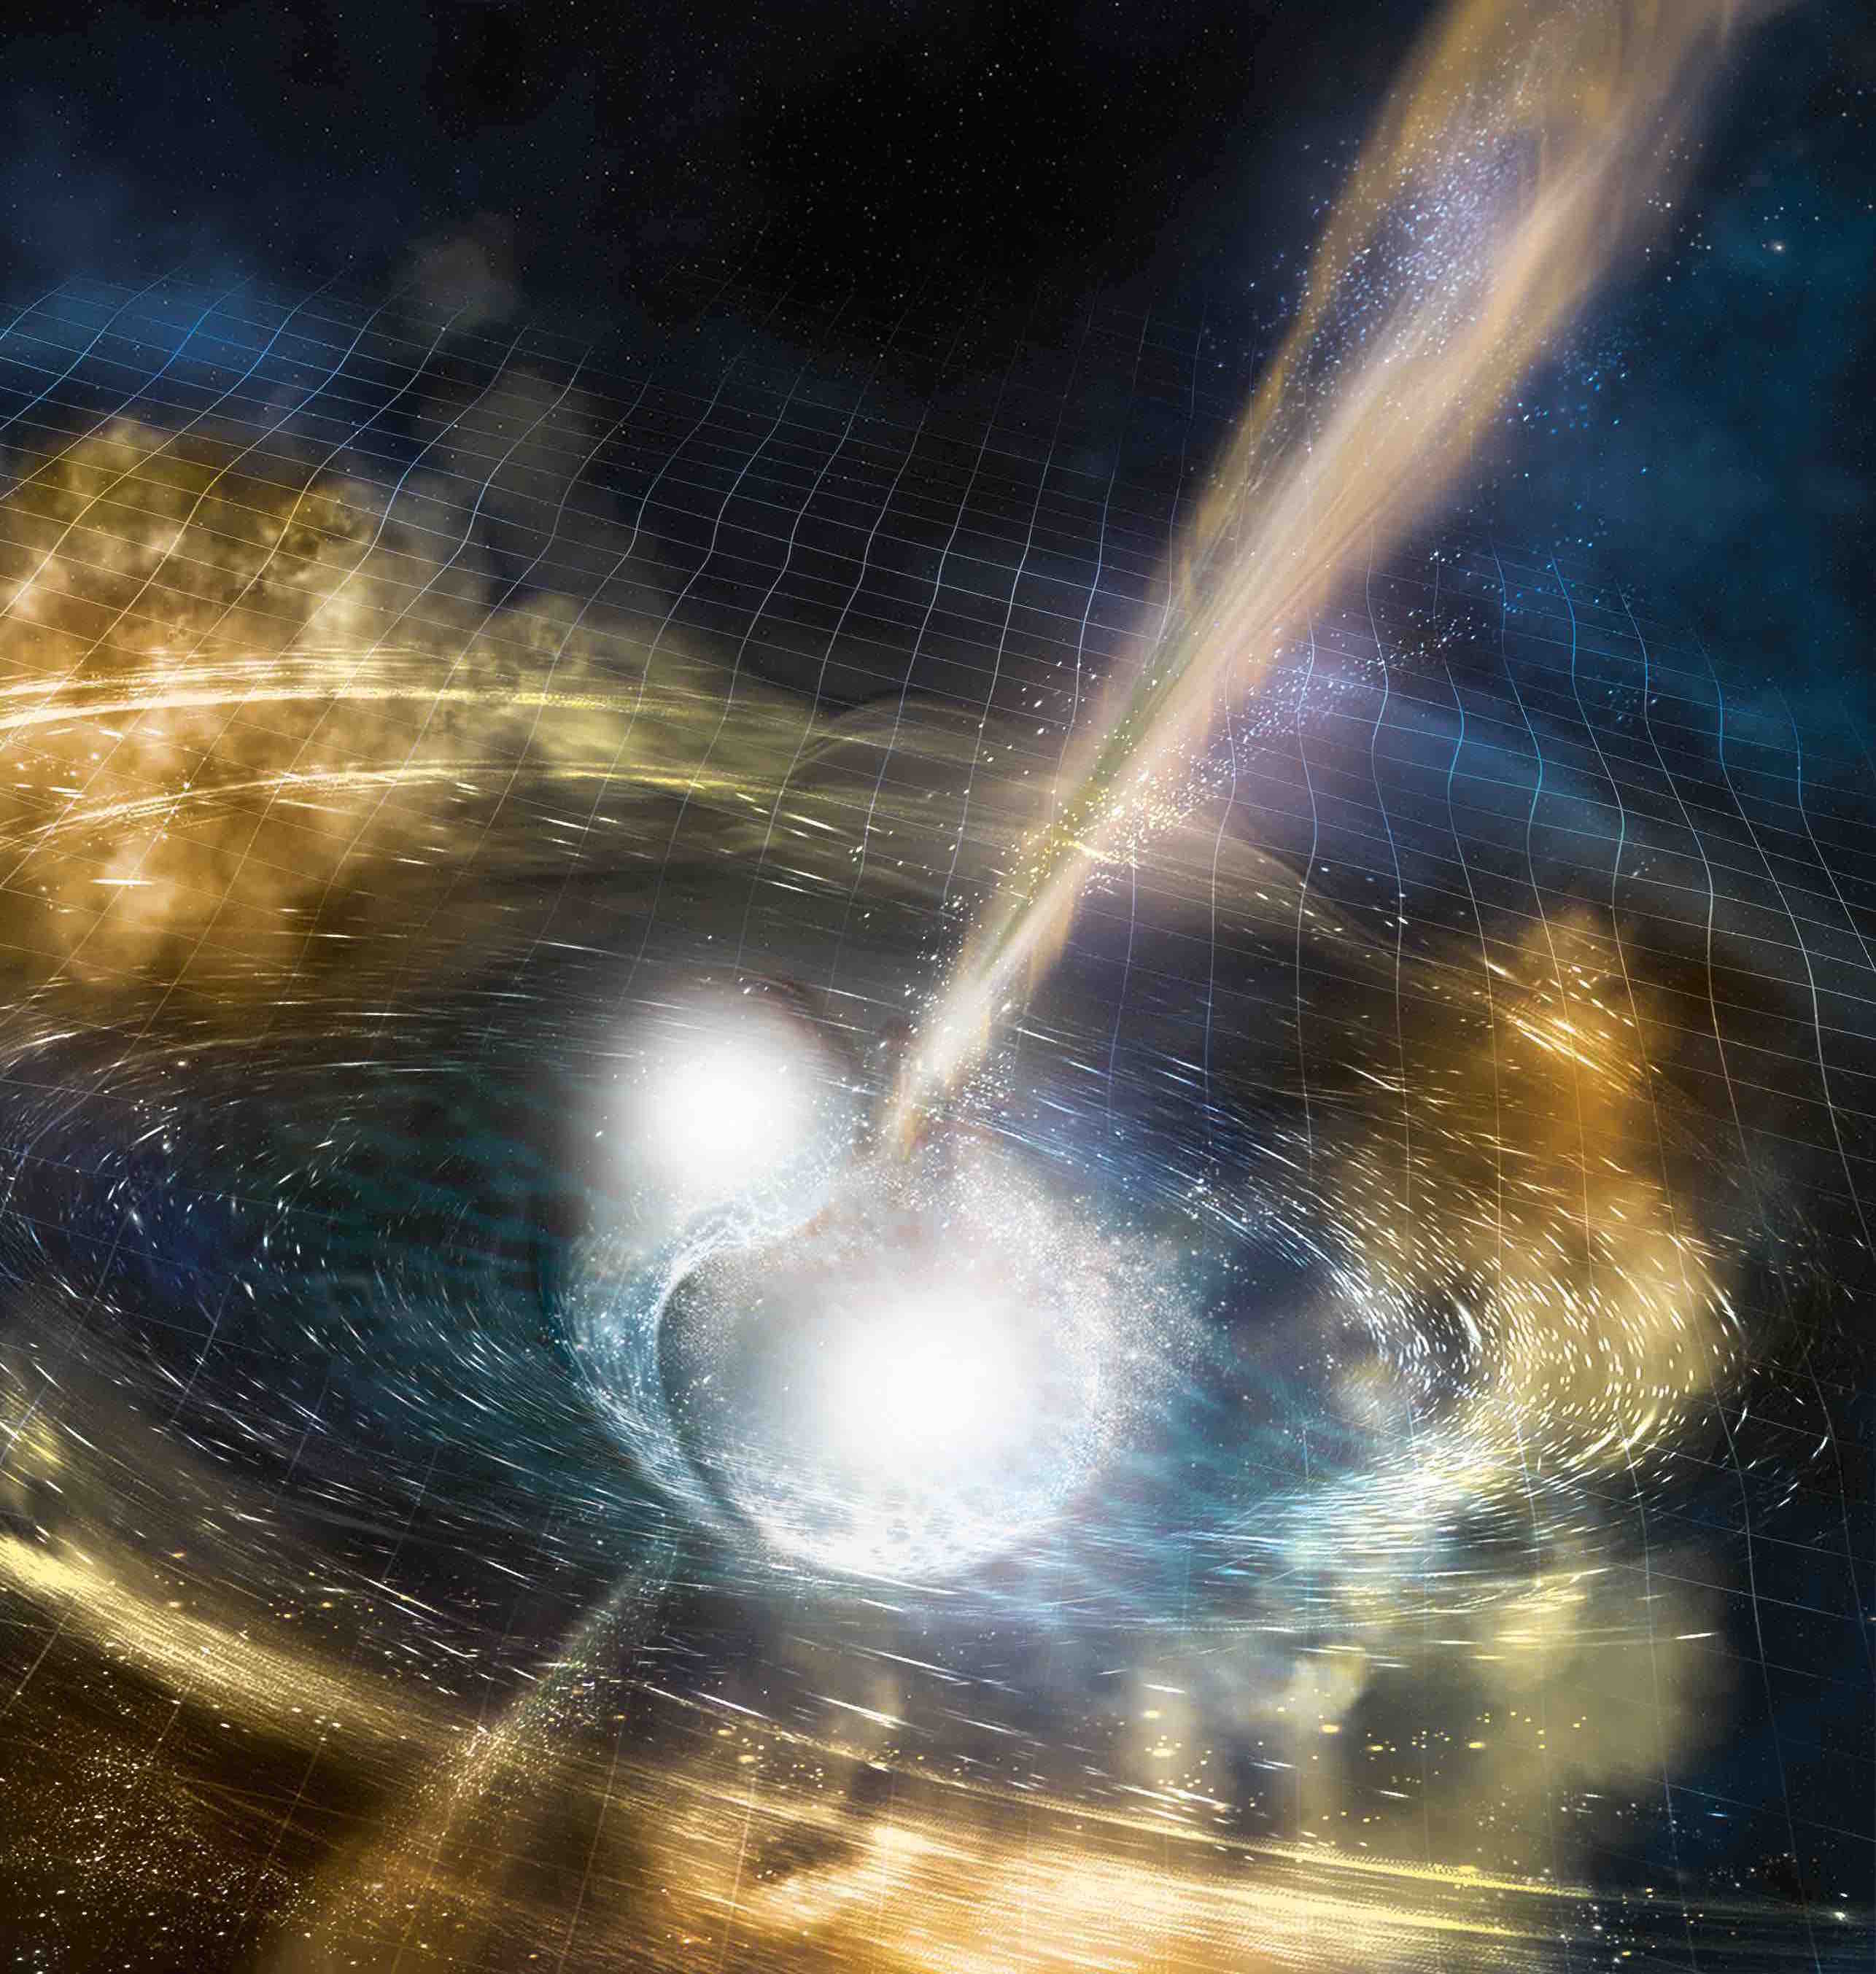 Merging neutron stars